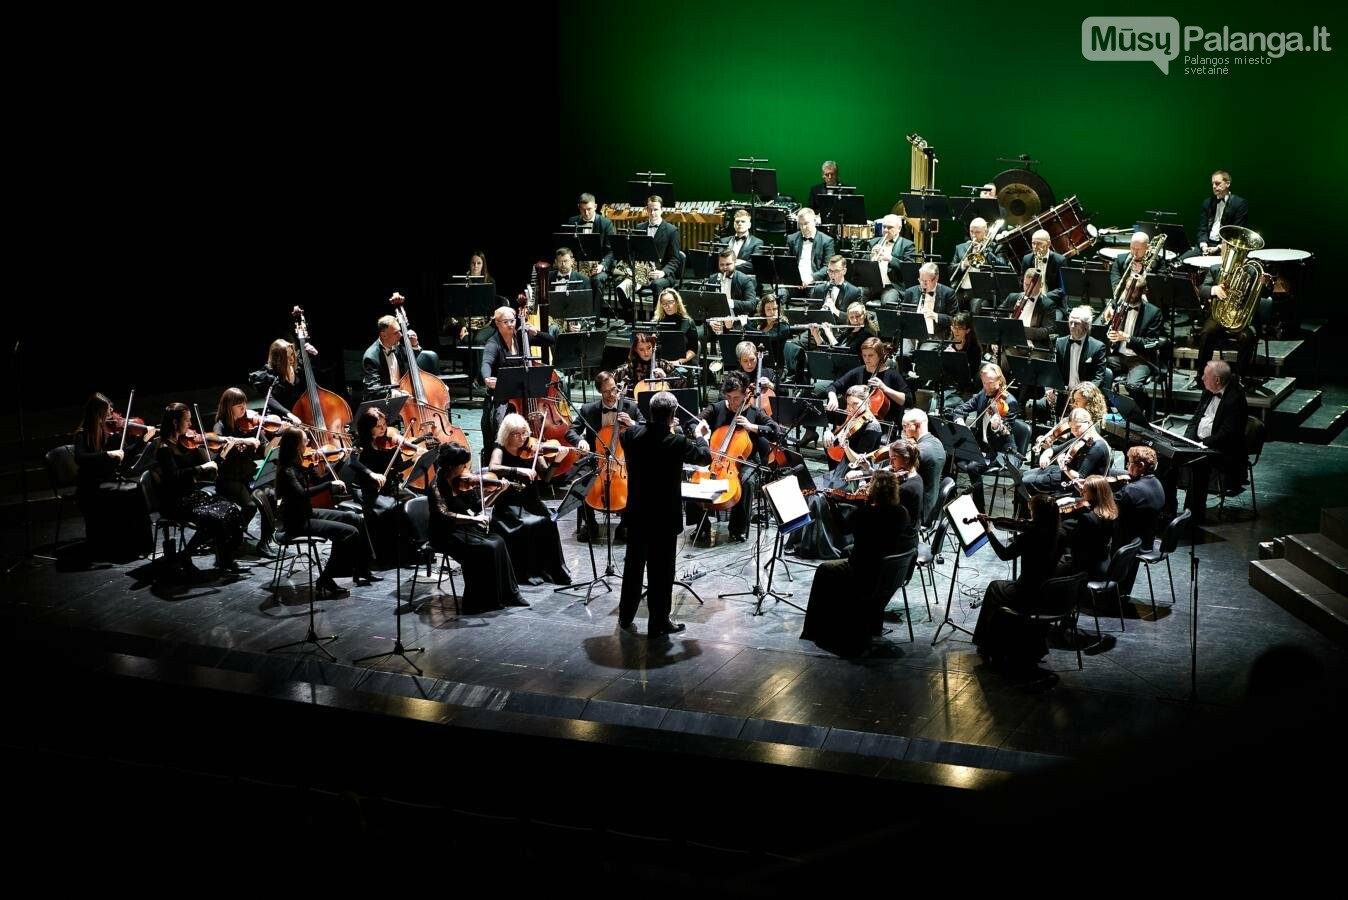 Klaipėdos valstybinio muzikinio teatro koncertas „Lietuviais esame mes gimę“. DKFOTO nuotr.